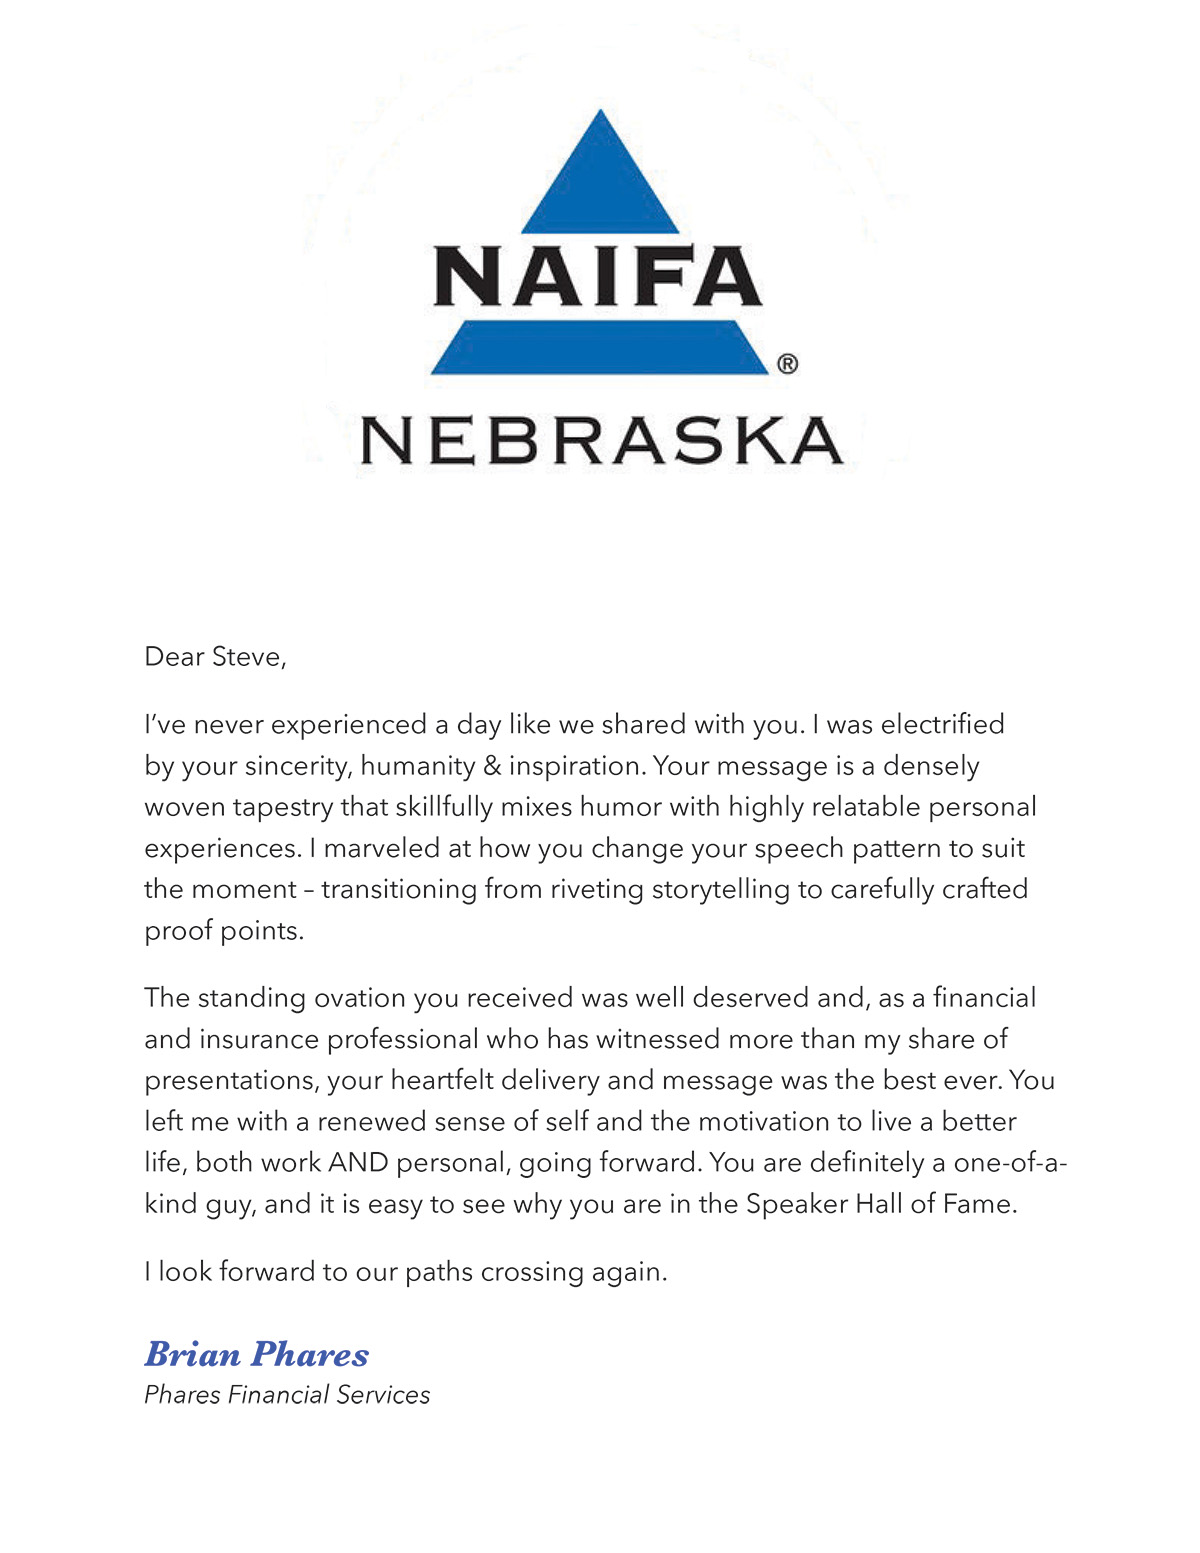 Fin-NAIFA-Nebraska